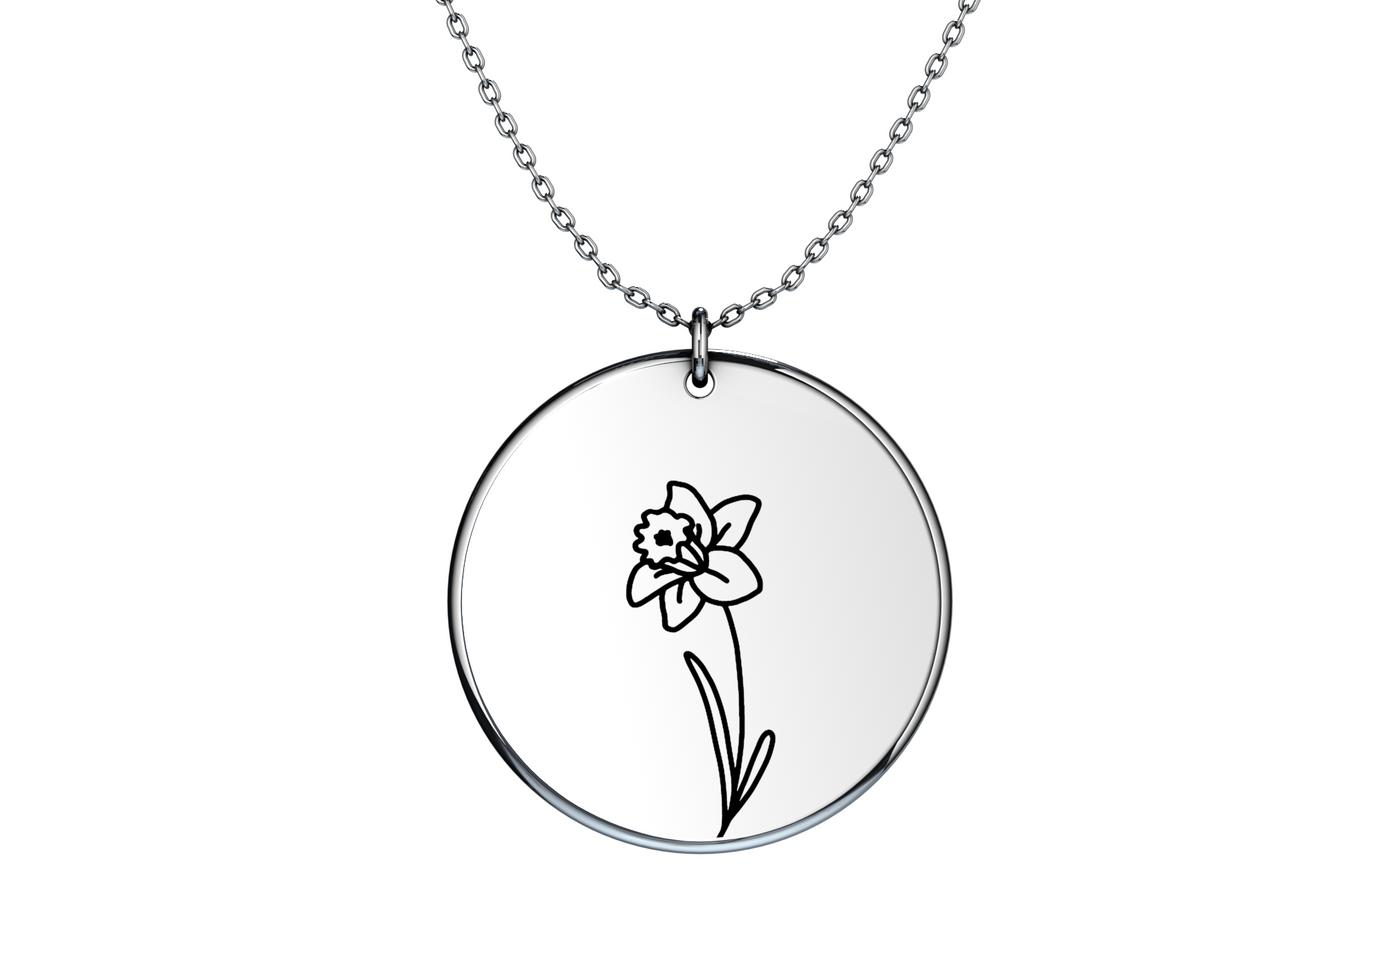 Birth Flower - Coin Necklace